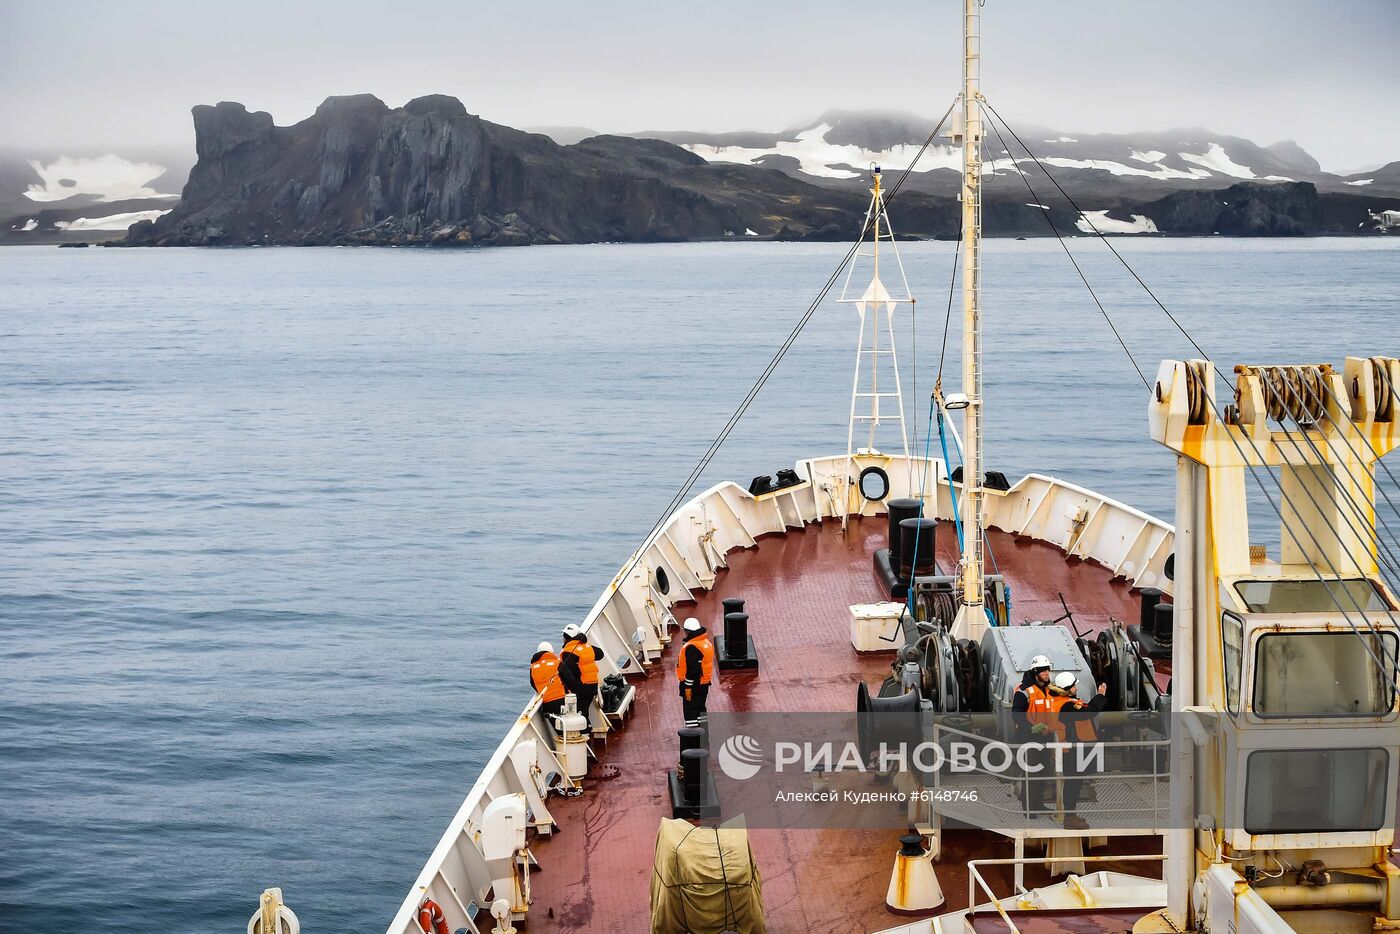 Исследовательское судно "Адмирал Владимирский" на пути из Монтевидео в Антарктиду